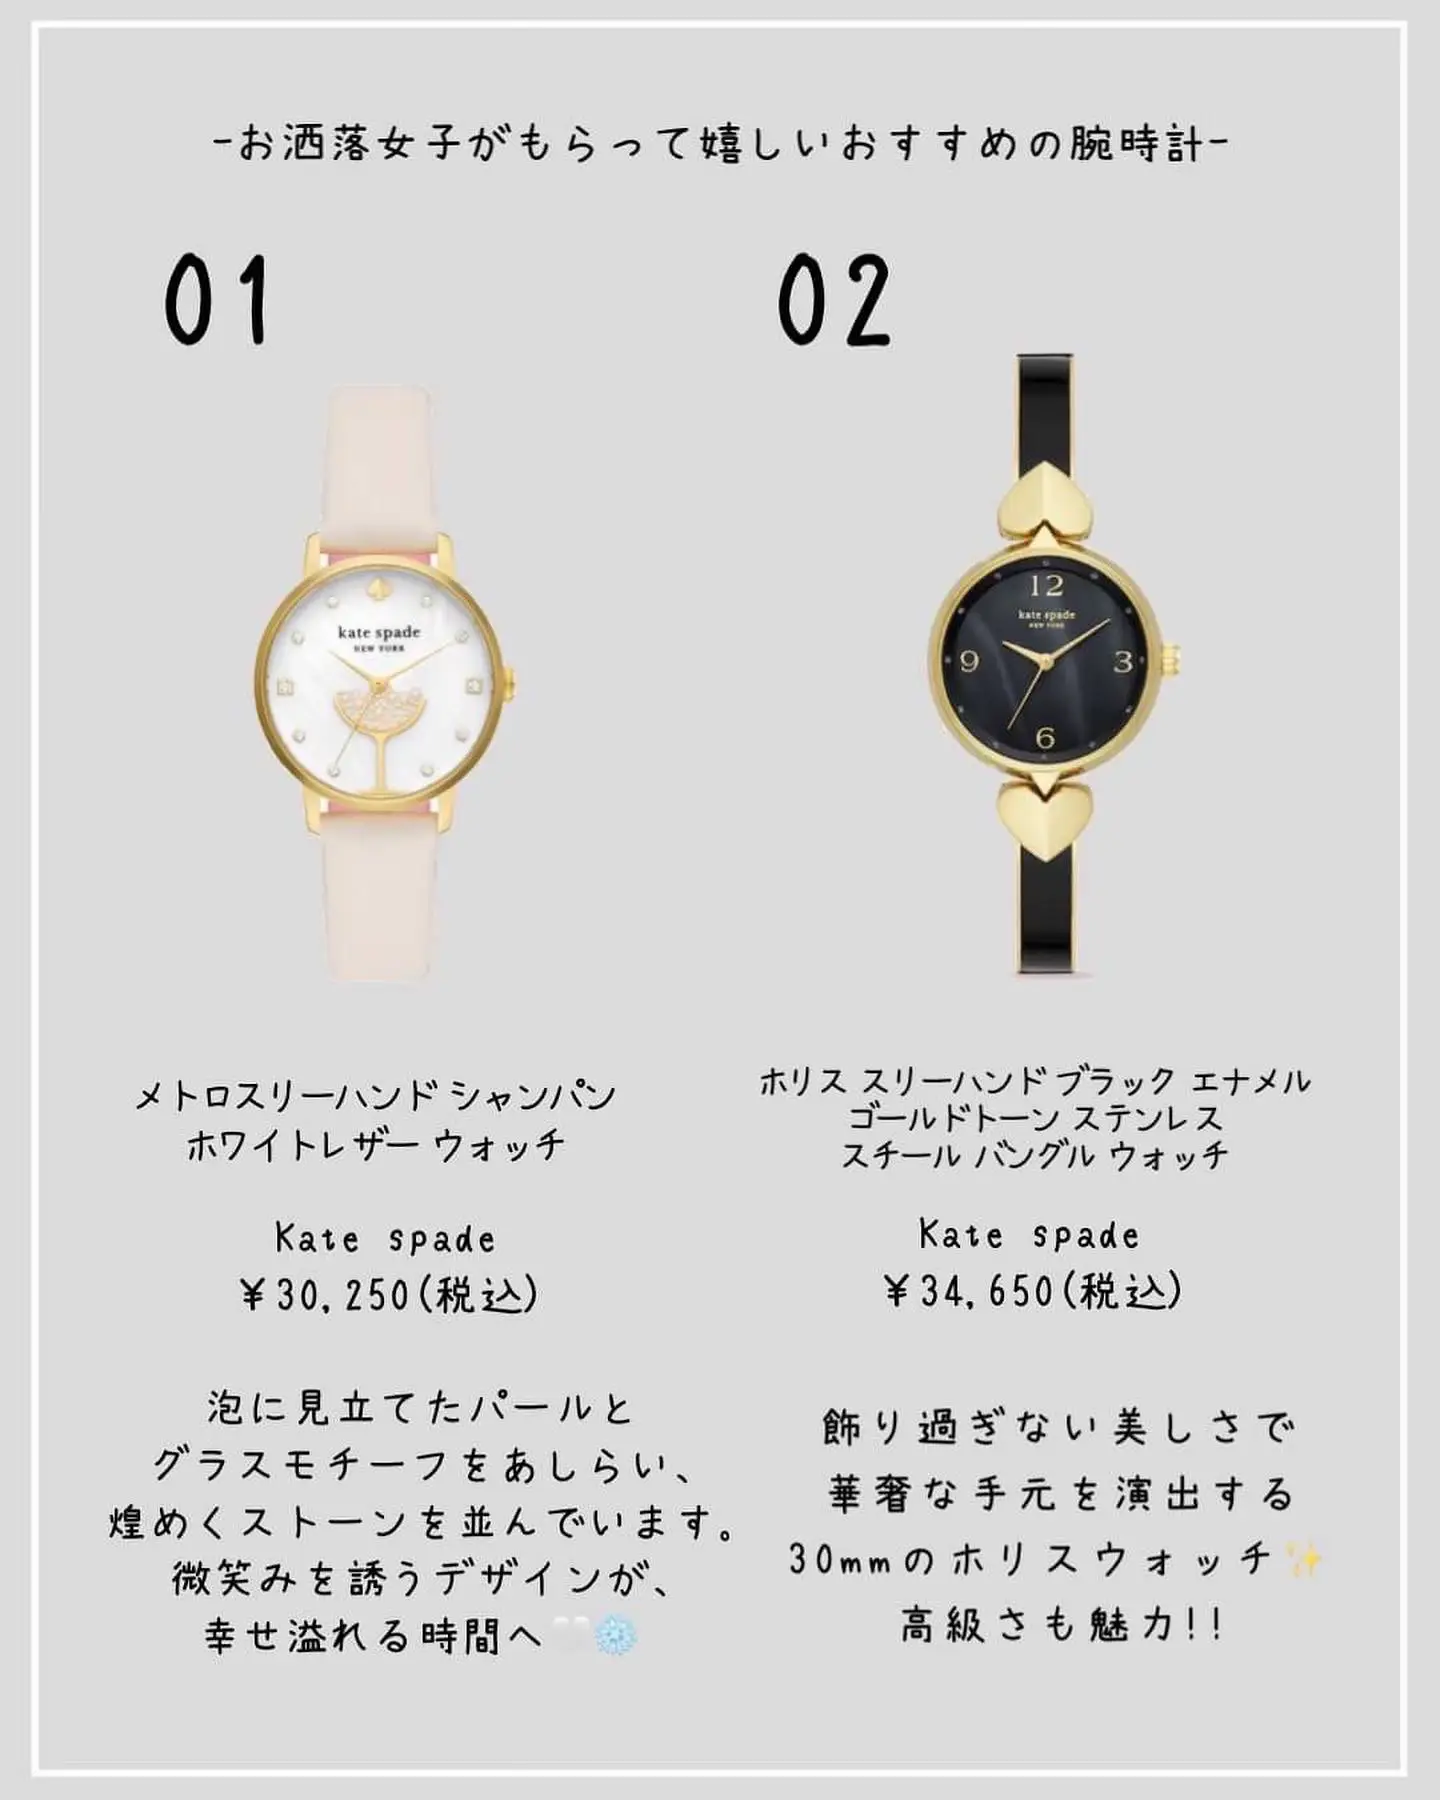 お洒落女子がもらって嬉しい】おすすめの腕時計10選」 | Kazu